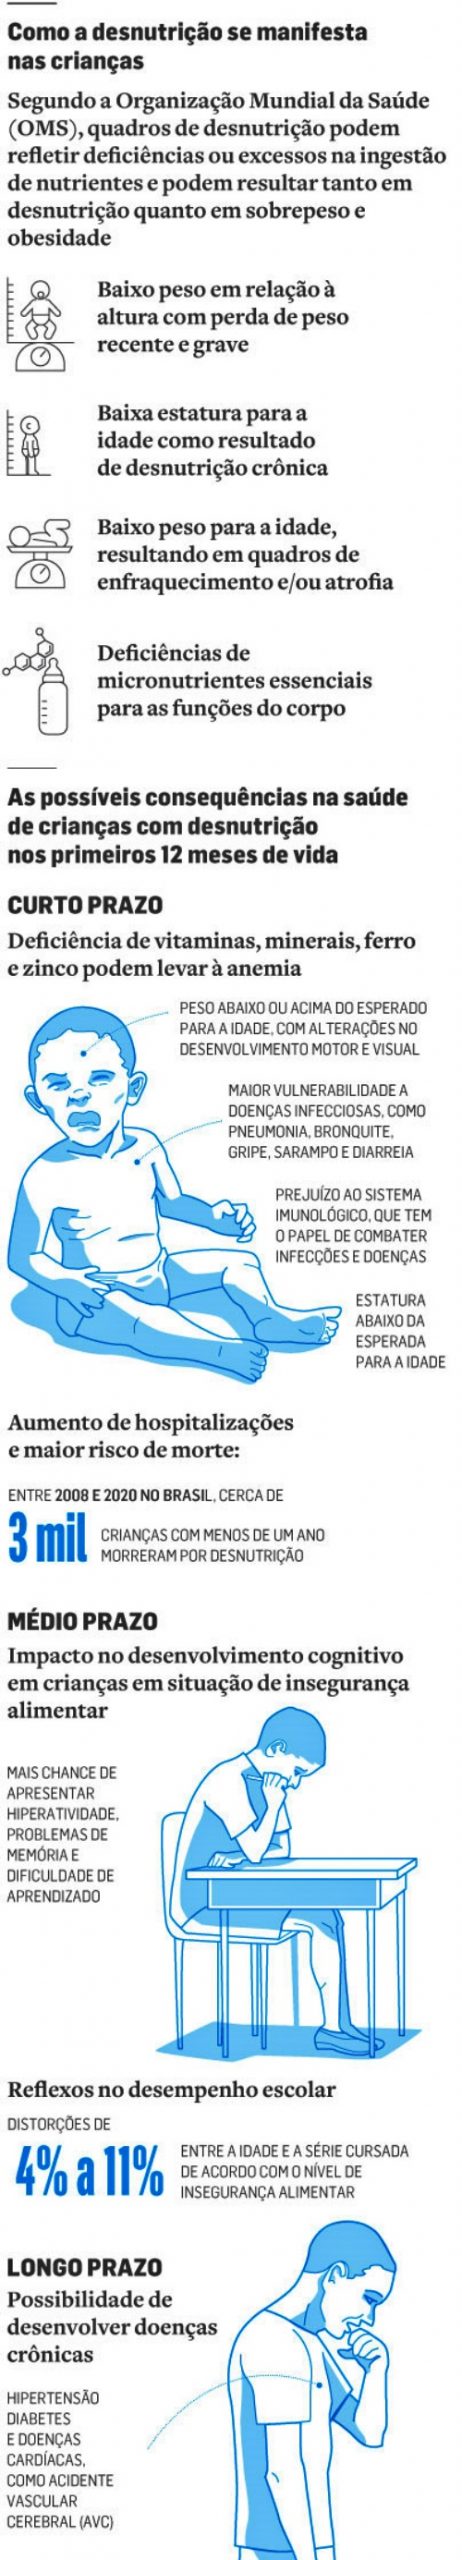 Taxa hospitalização desnutrição infantil explodiu gestão Bolsonaro dados